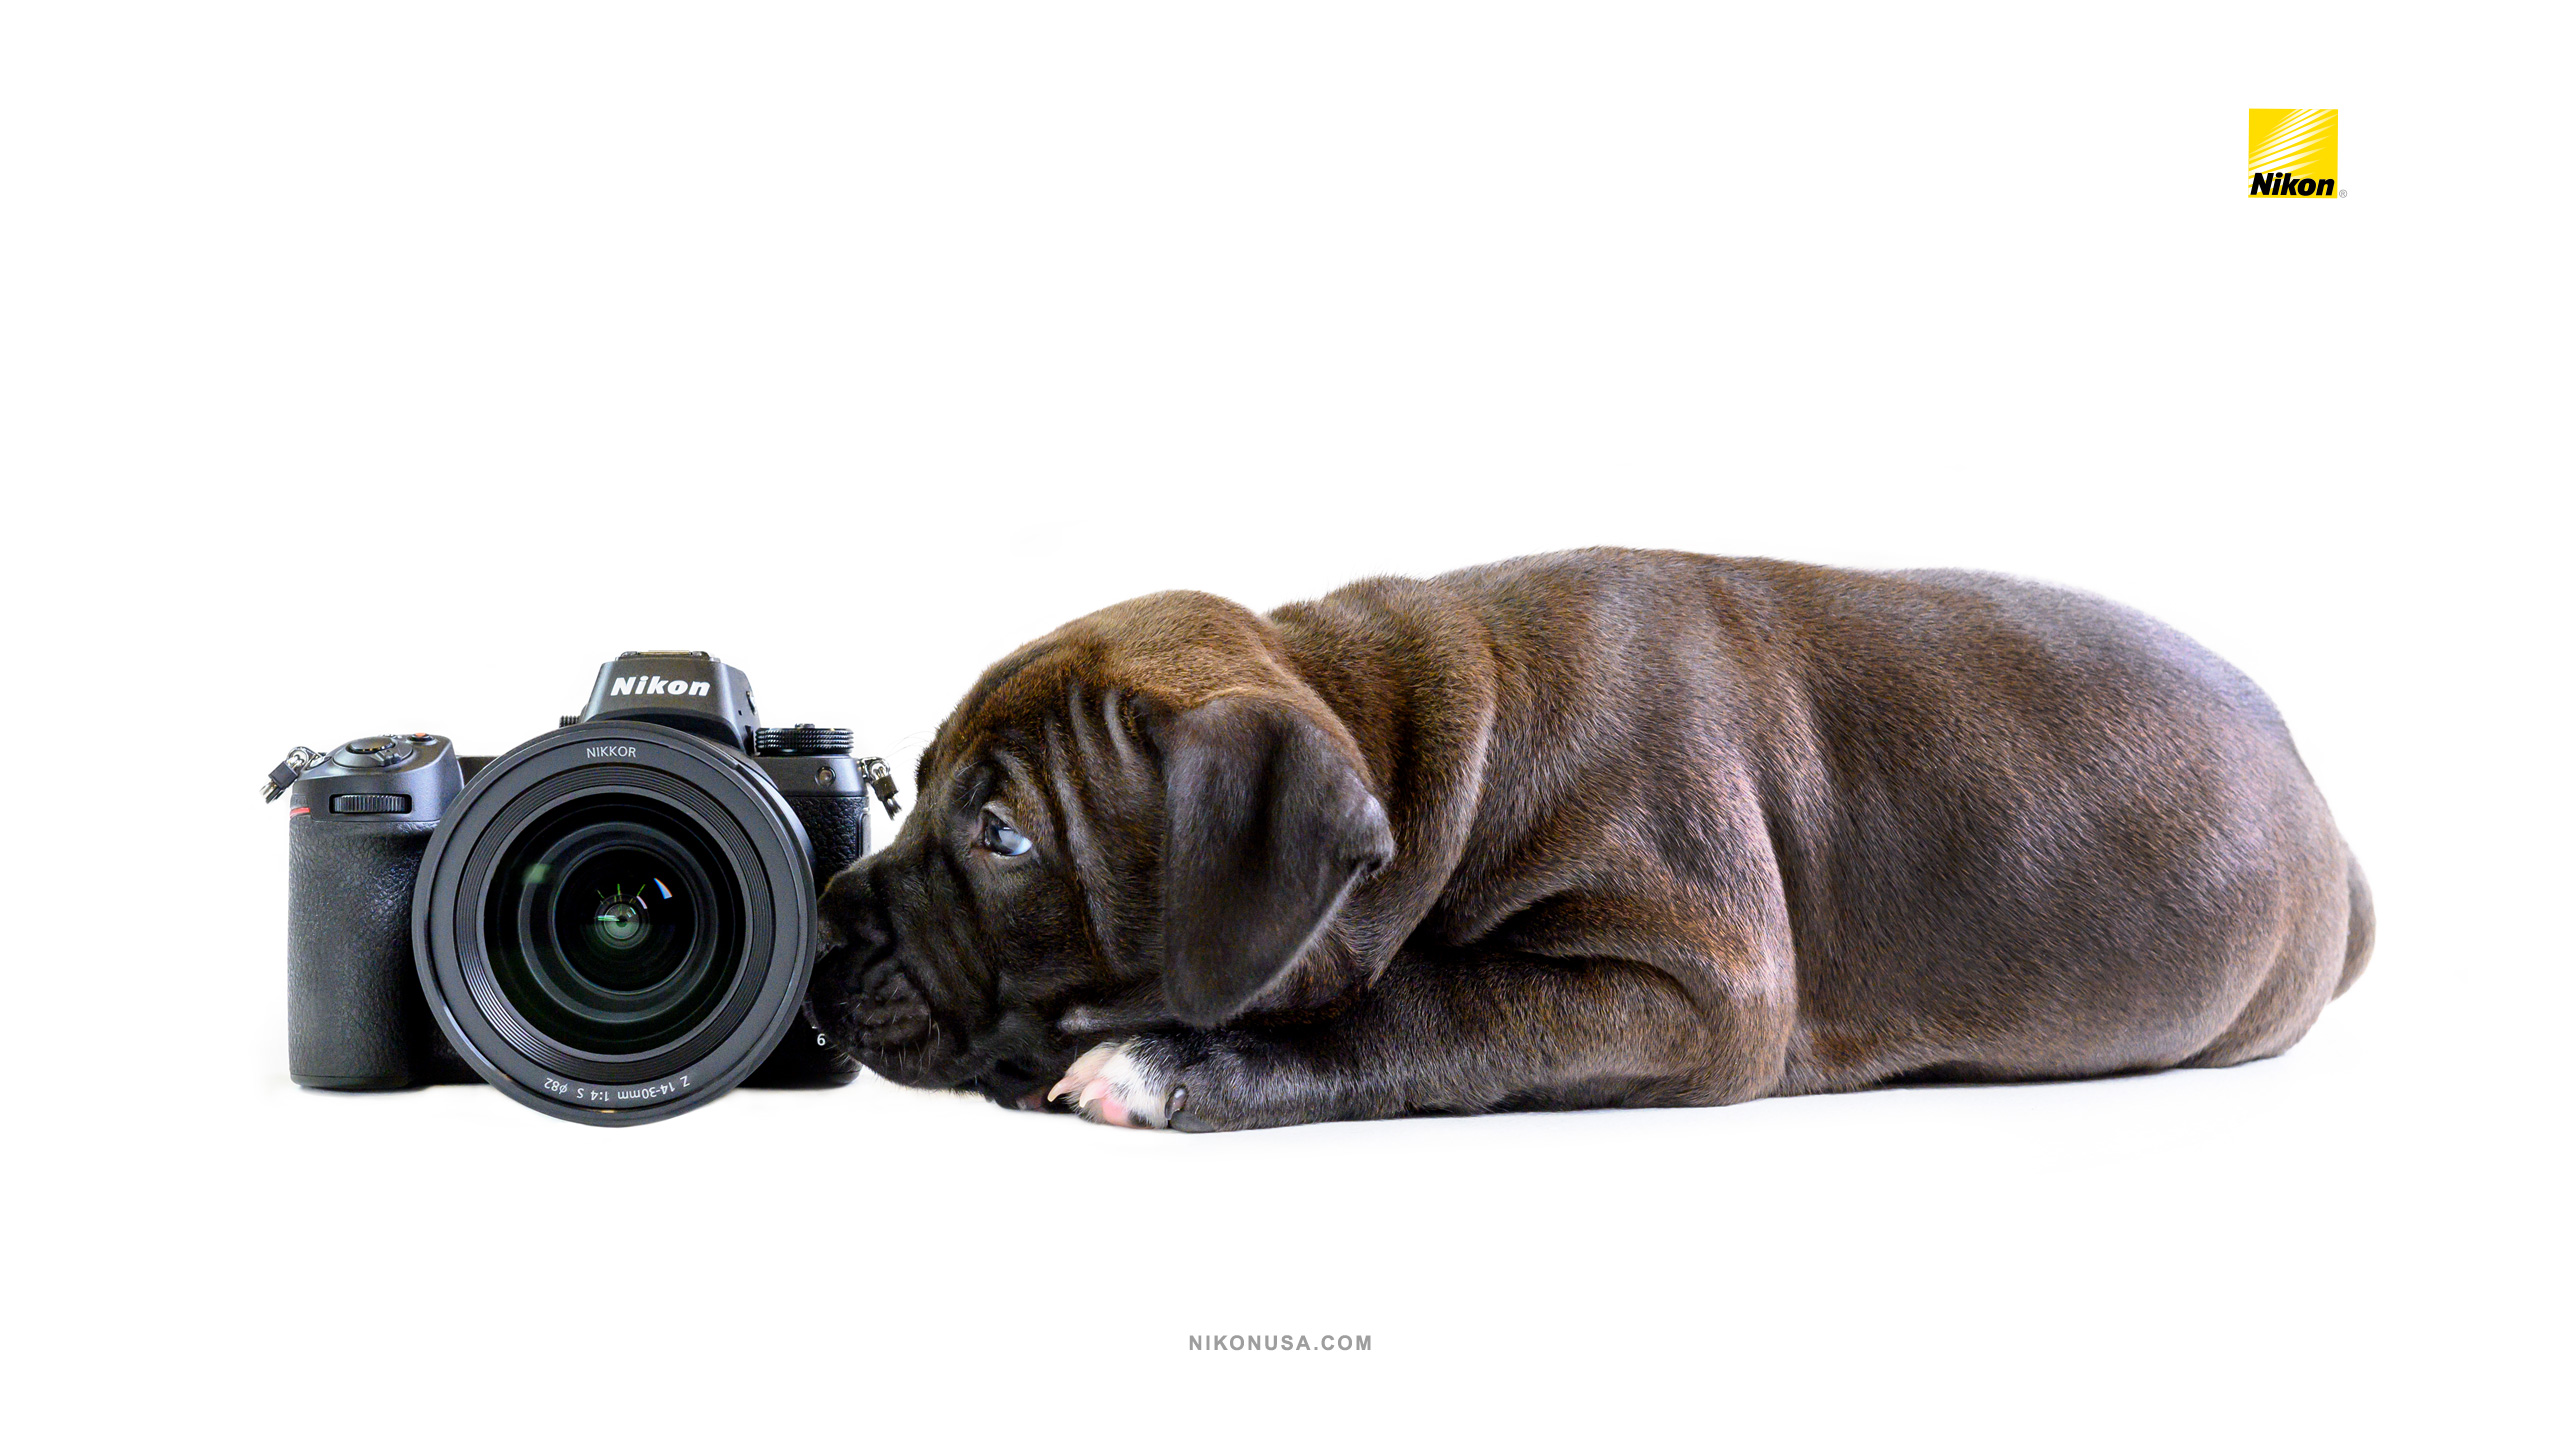 Tamara Lackey Nikon Puppies and Gear